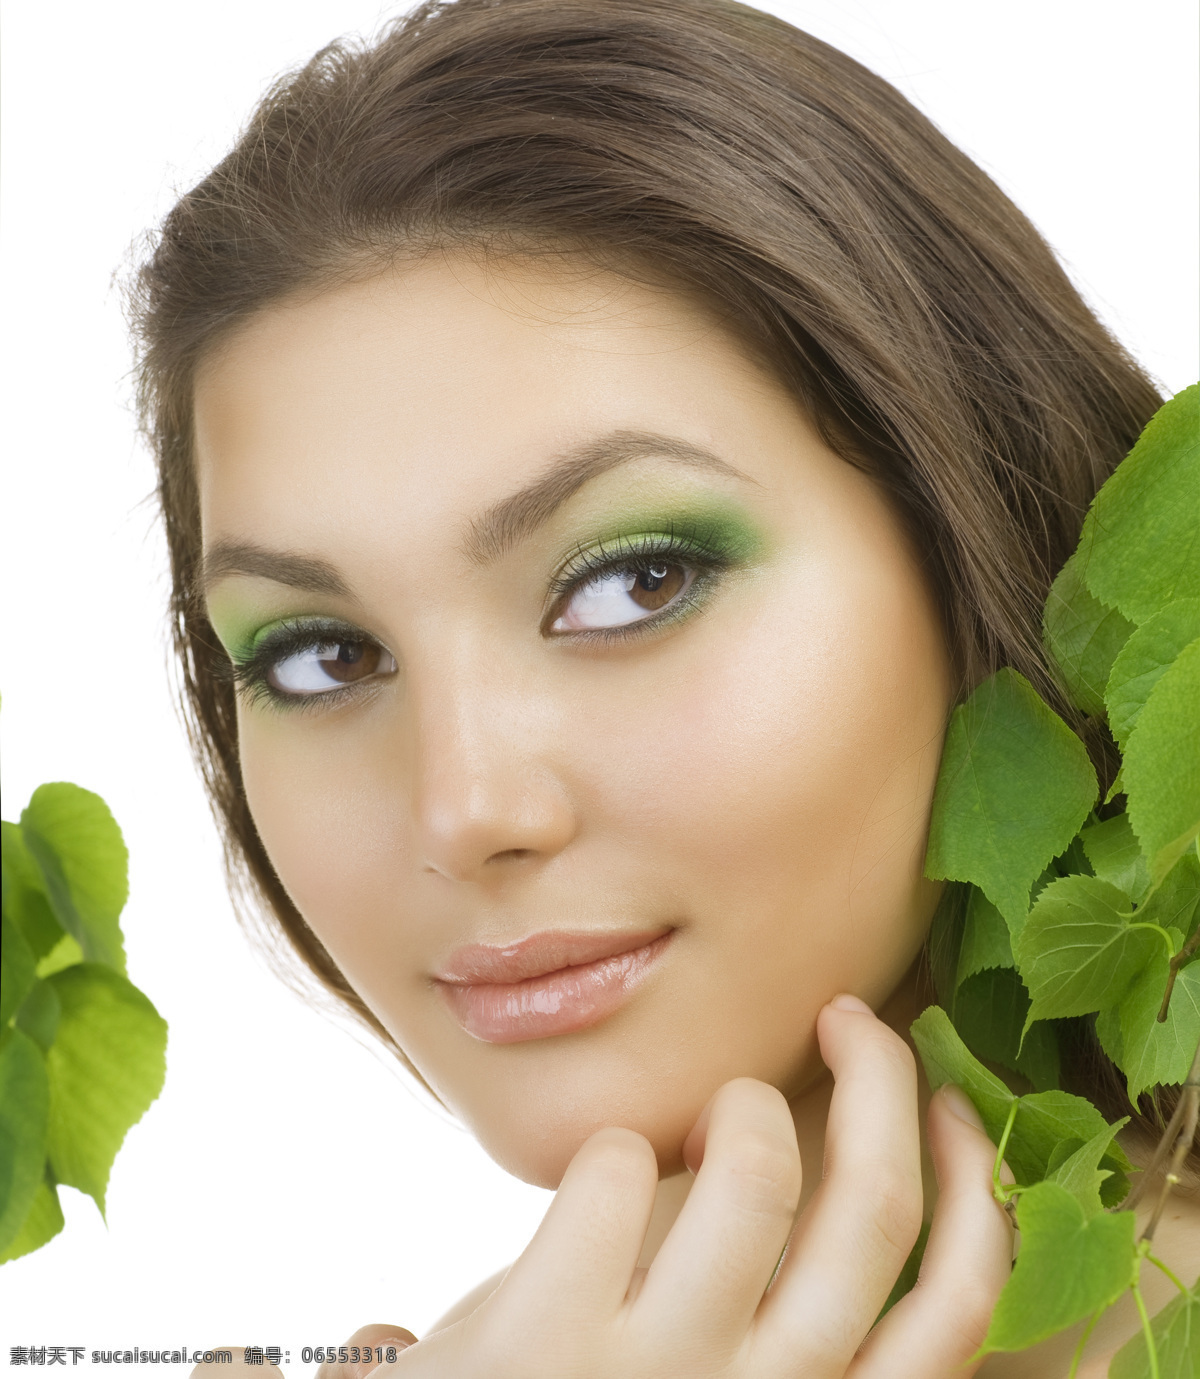 化 绿 眼 妆 气质 女人 人物 女性 漂亮 美丽女人 魅力 美容 护肤 化妆 彩妆 绿色眼影 绿叶 植物 摆造型 发型 人物图库 拍照 高清图片 美女图片 人物图片